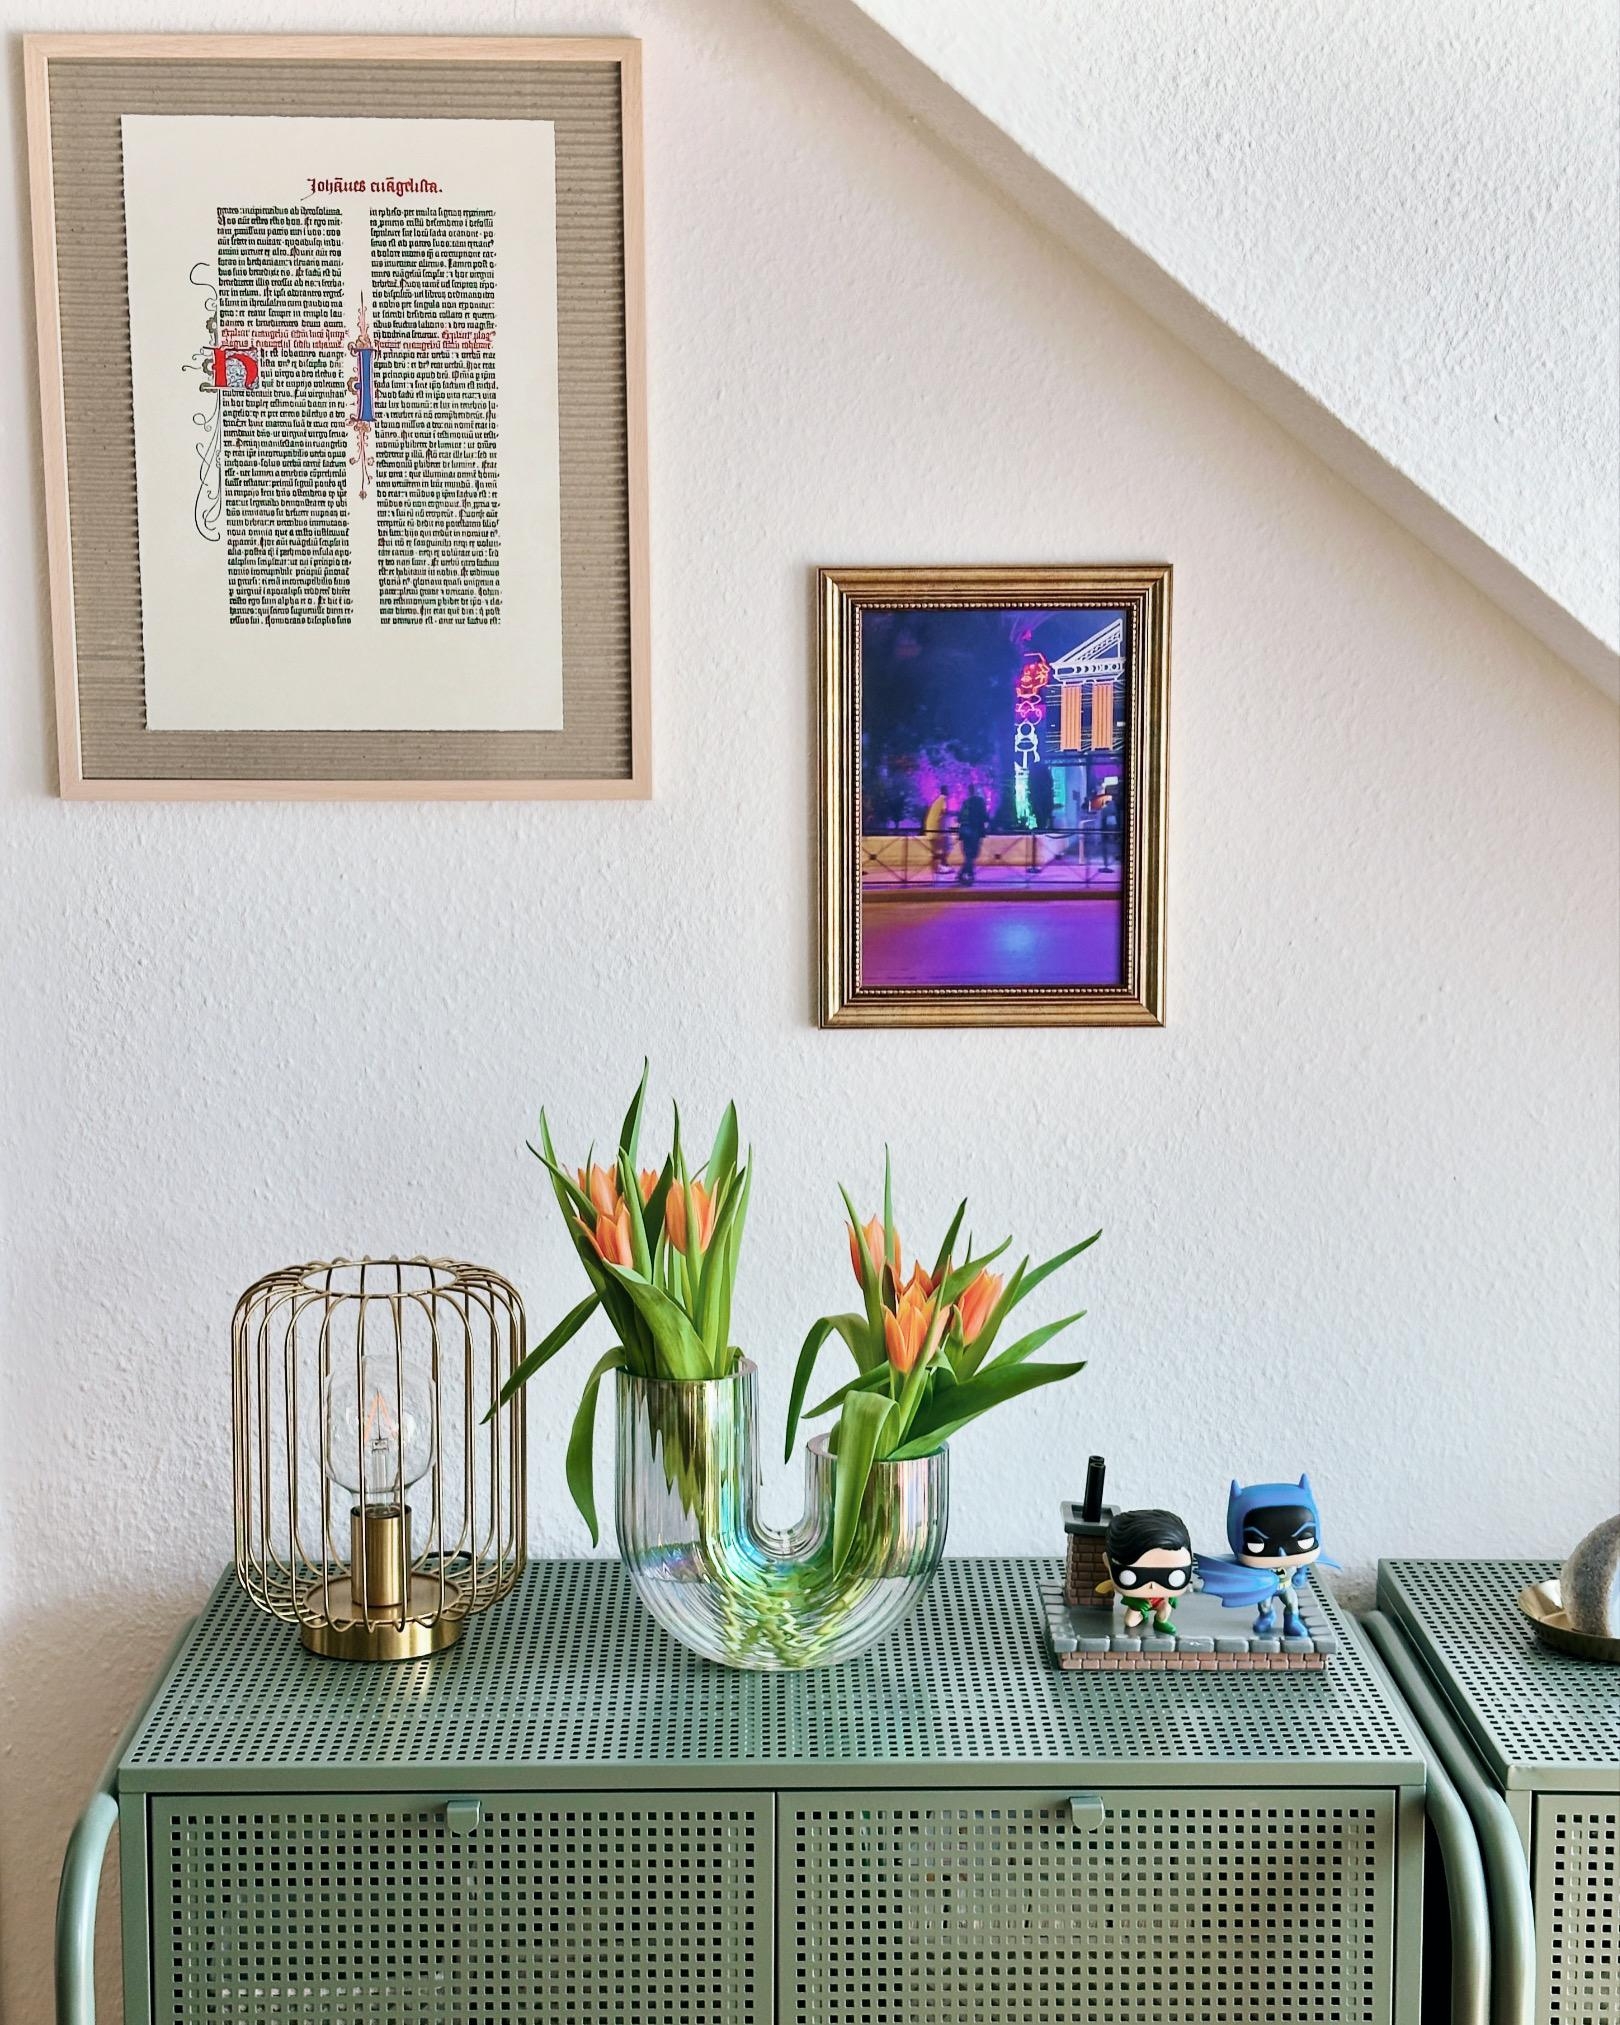 Tulpenliebe 💚🌷🧡 
#wohnzimmer #kommode #sideboard #frühling #tulpen #couchstyle #tischlampe